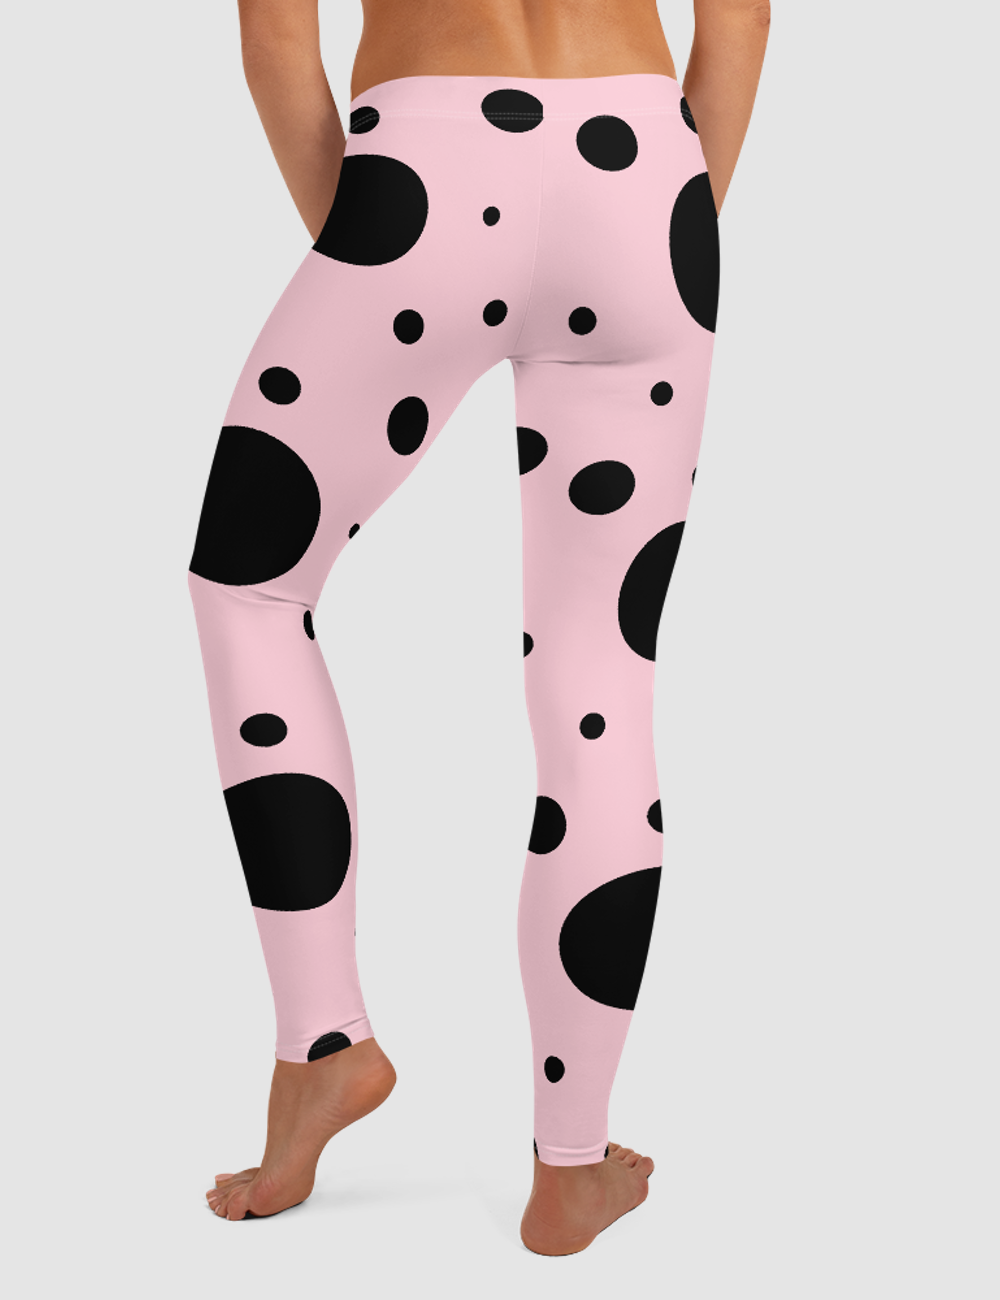 Pink Ladybug | Women's Standard Yoga Leggings OniTakai